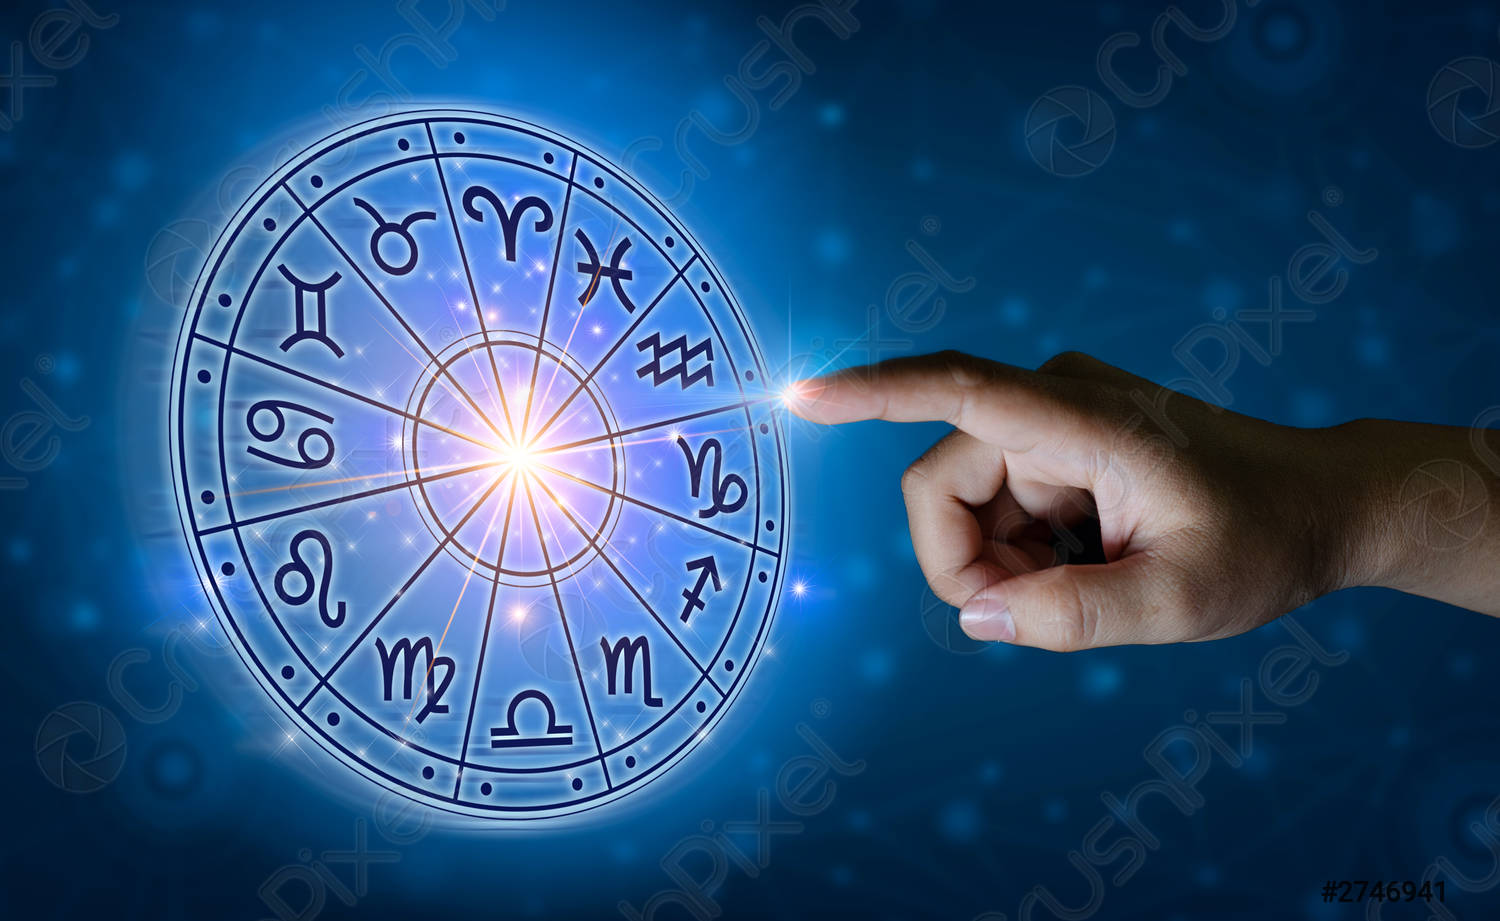 Астрологи рассказали, с какими испытаниями столкнутся некоторые знаки Зодиака в будущем году